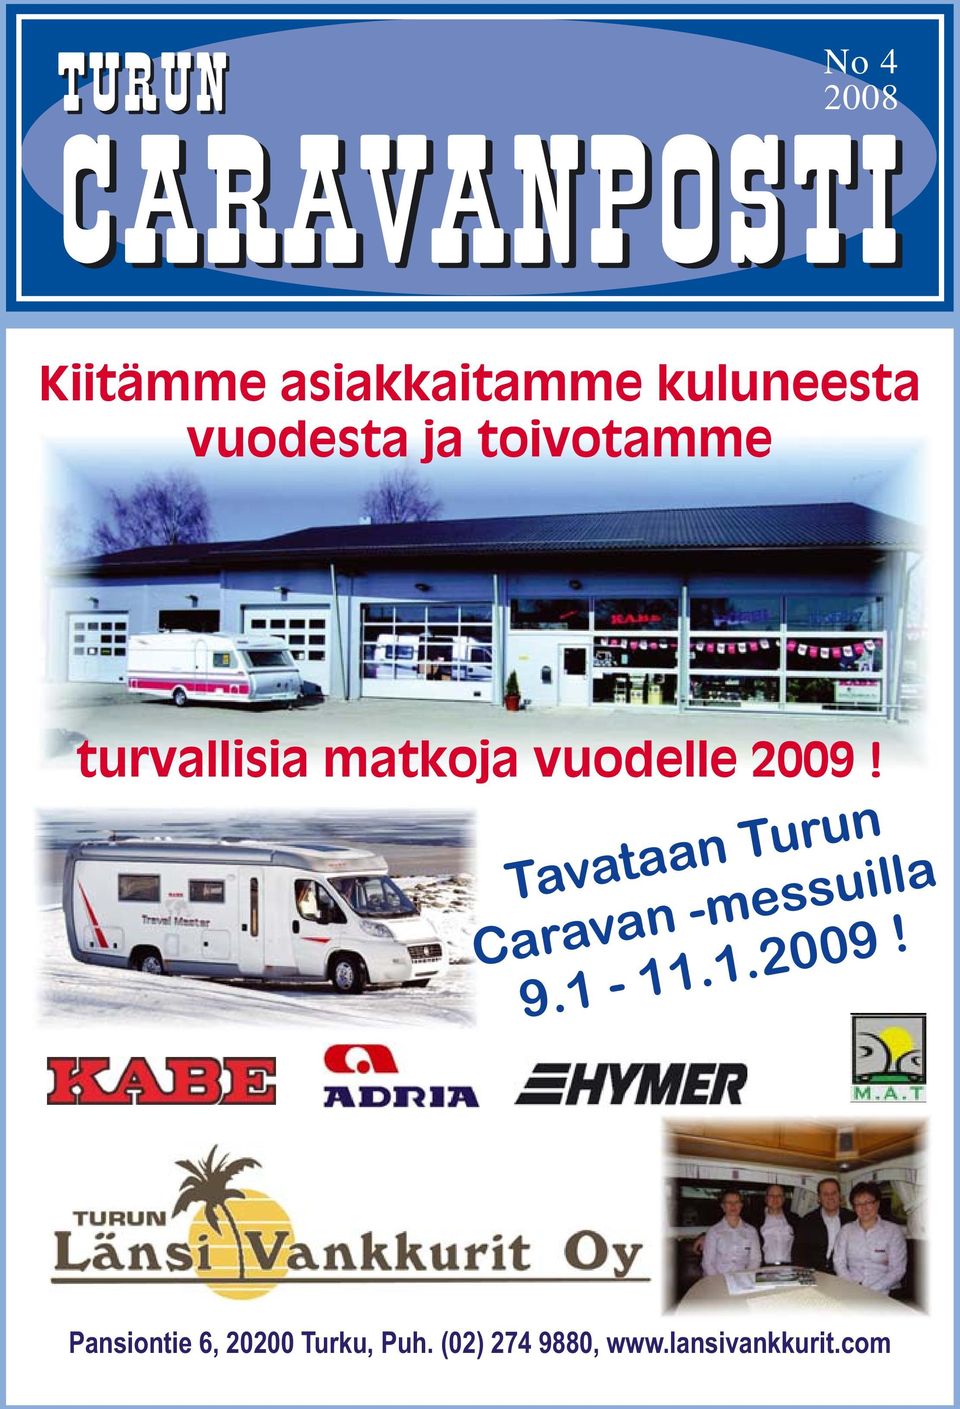 Tavataan Turun Caravan -messuilla 9.1-11.1.2009!